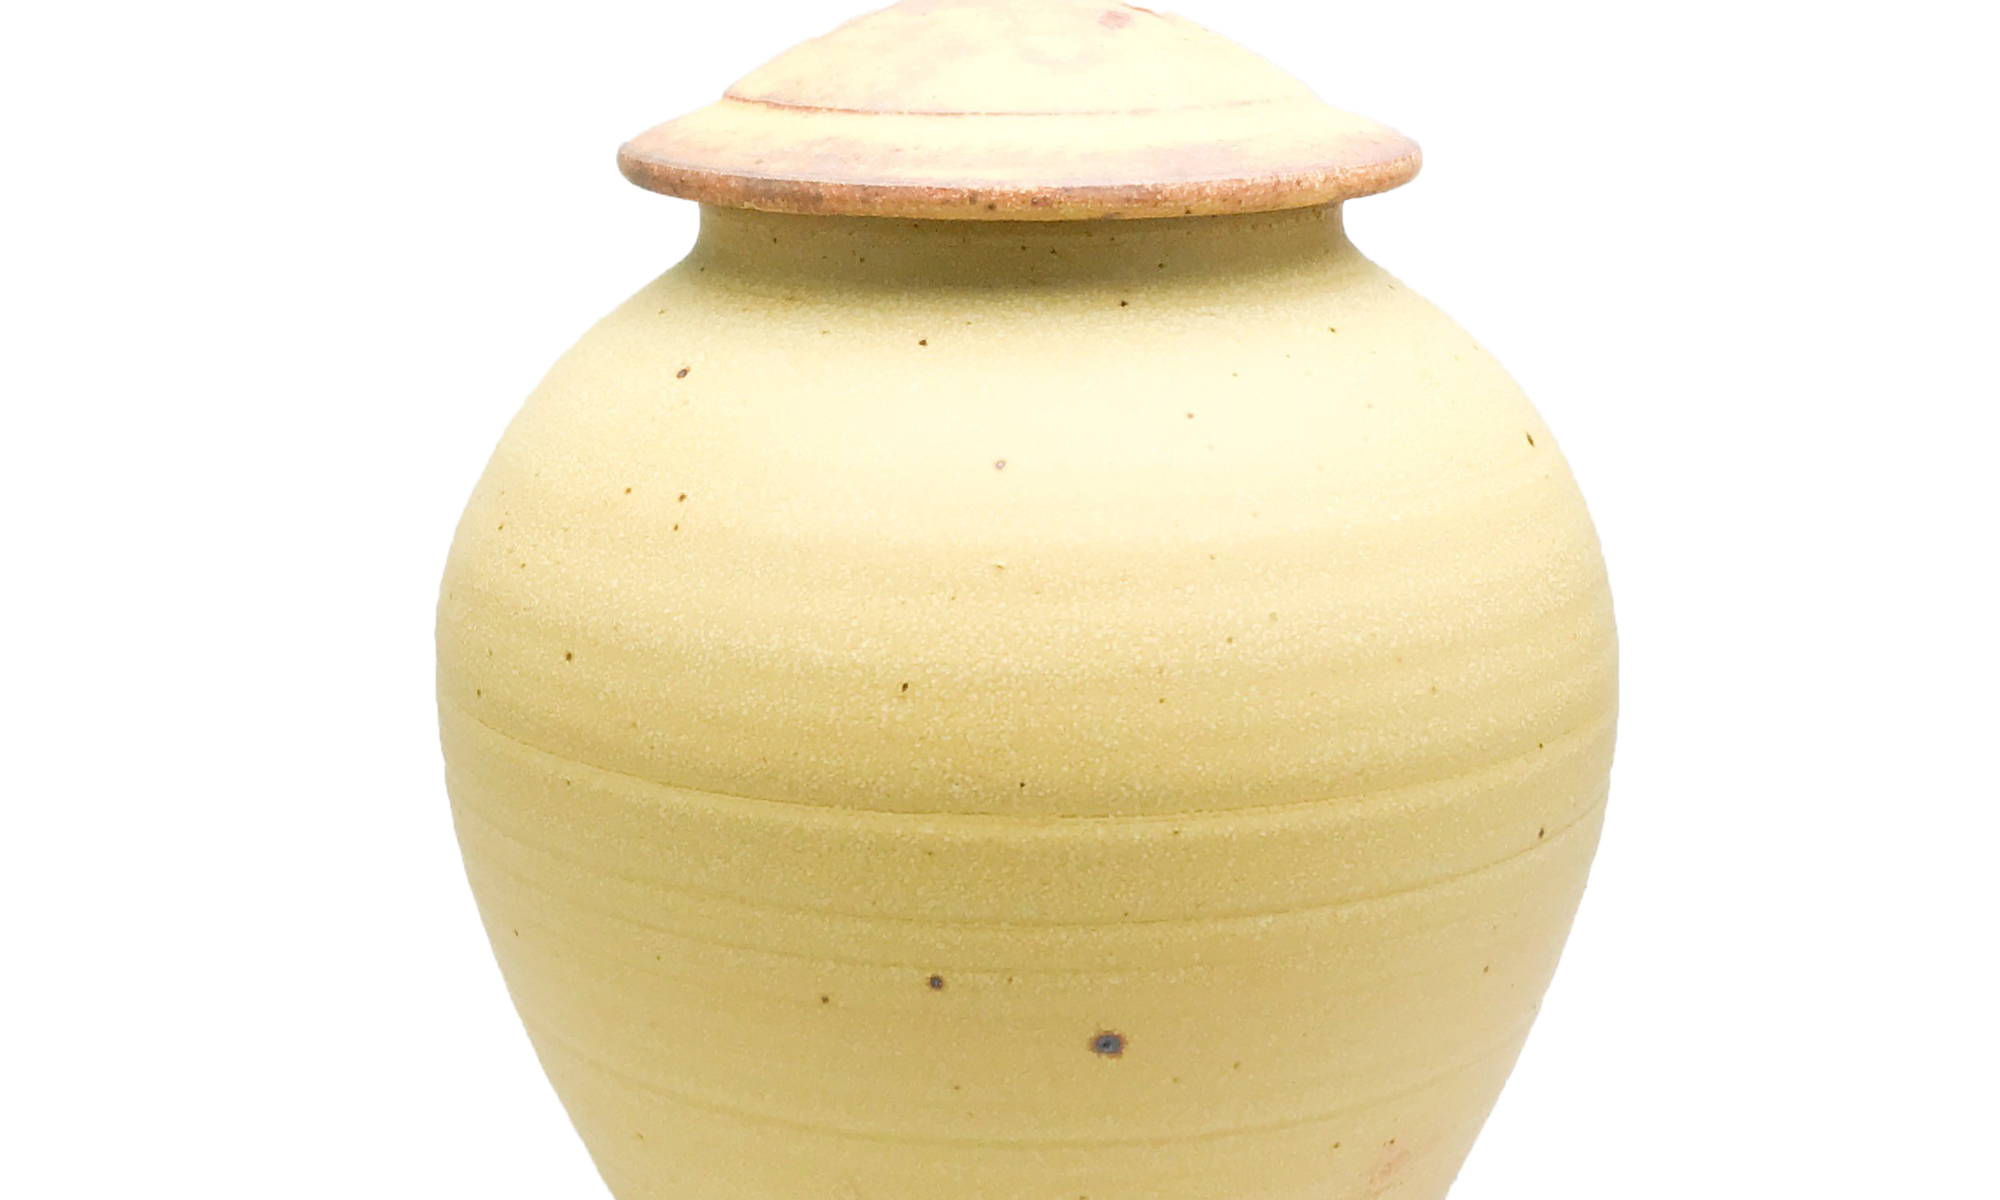 Handmade-Stoneware-Urn-Yellow-Rust-Kent-Harris-KH-MDY-URN-2